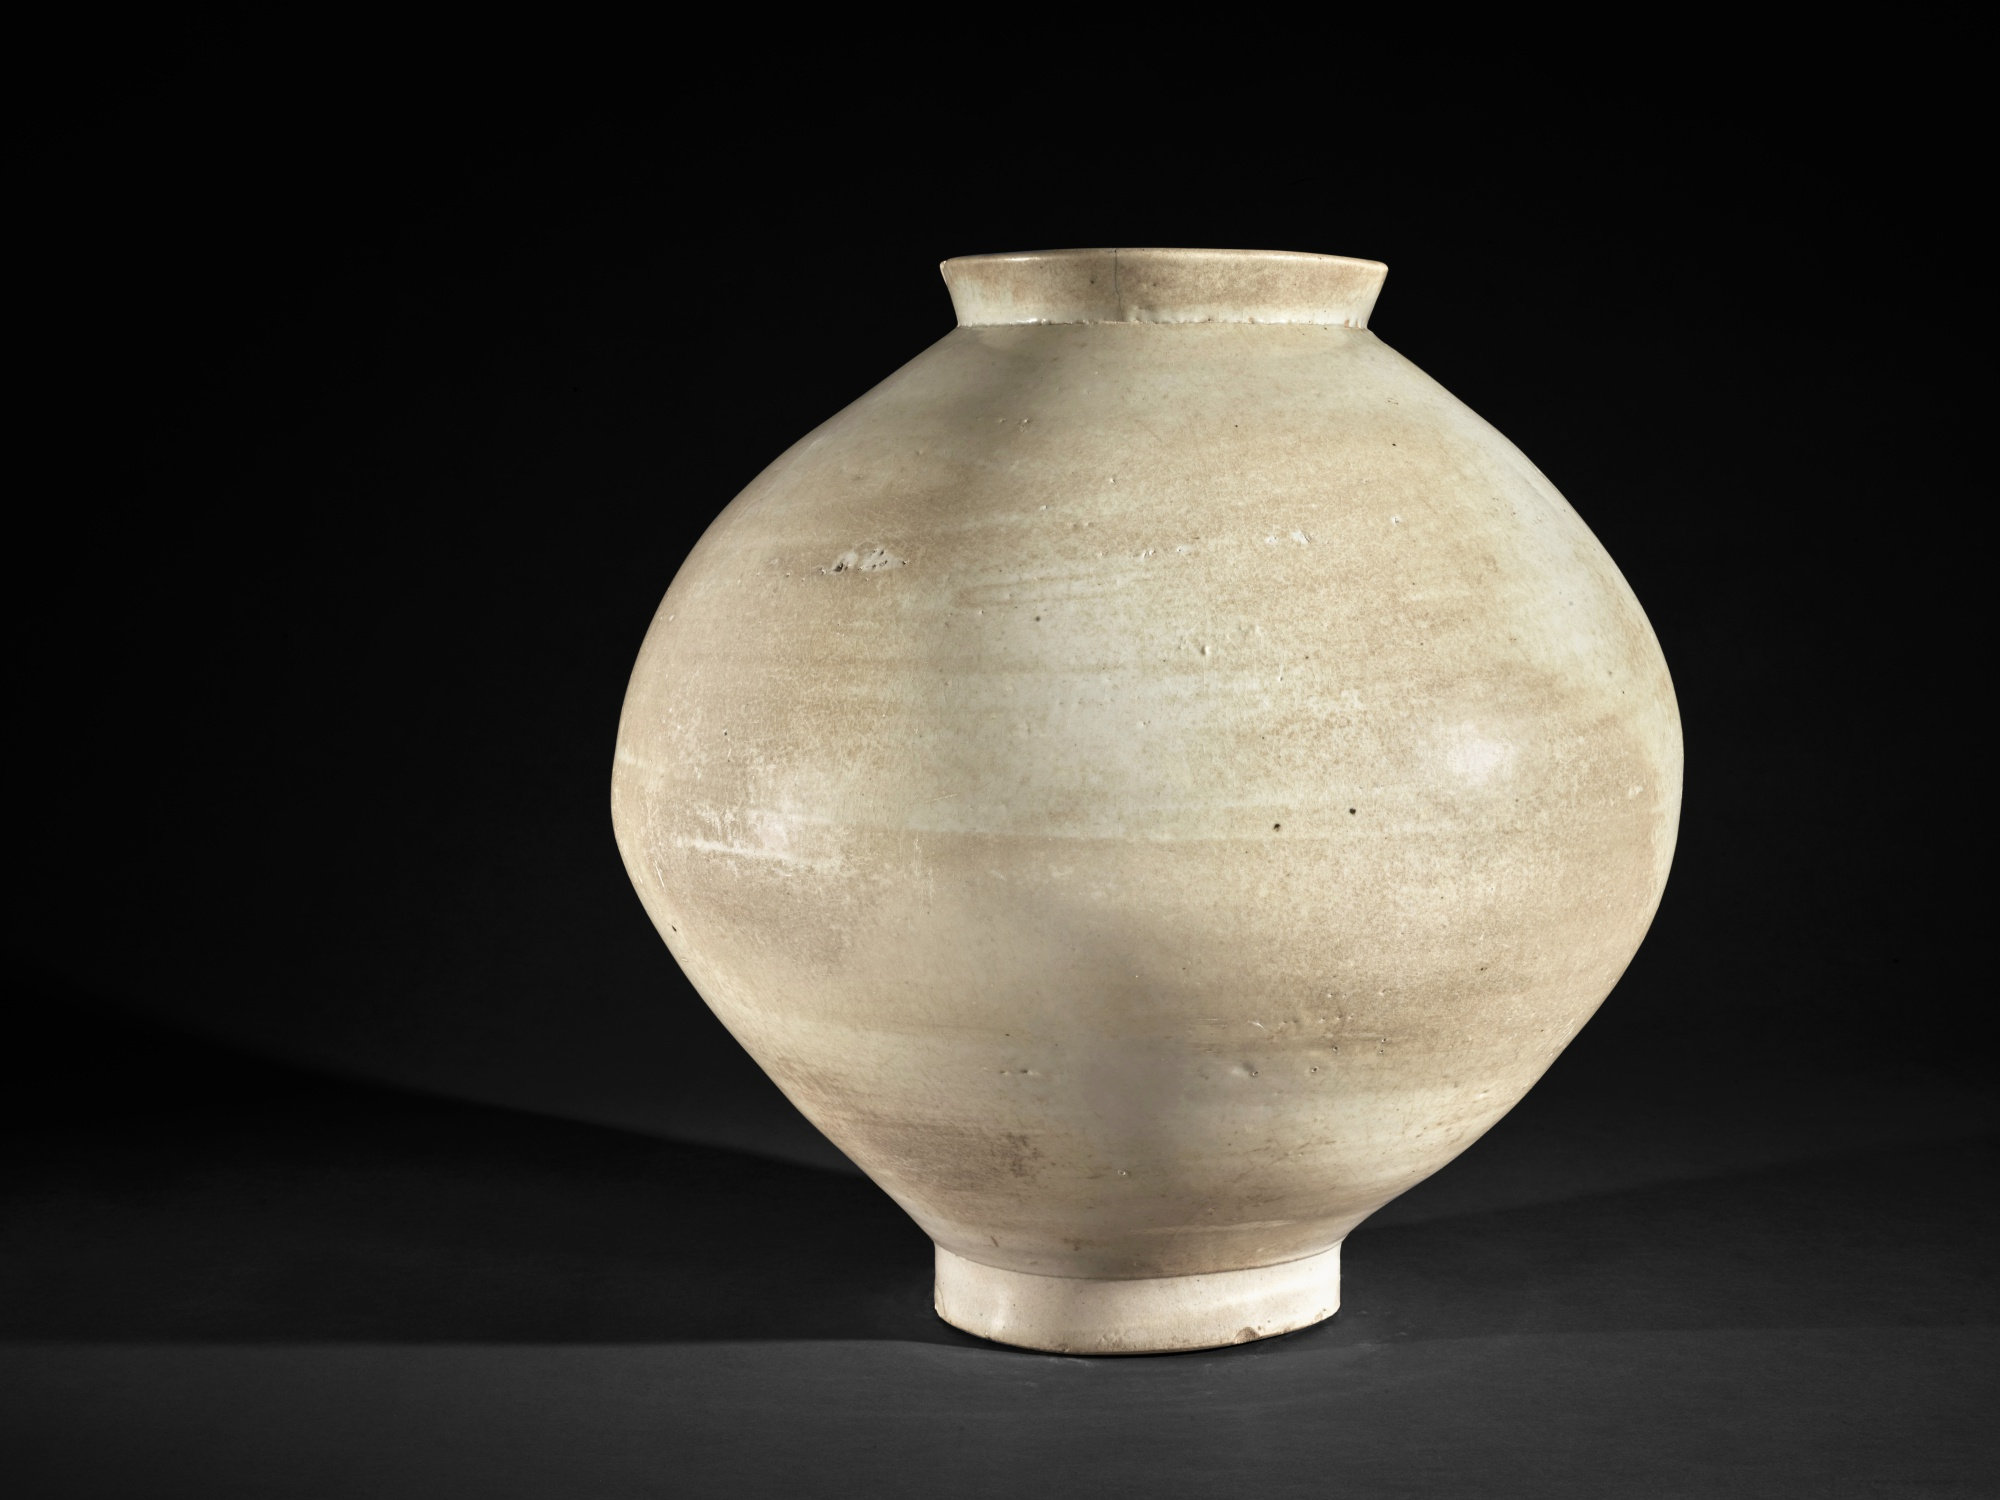 Smarthistory – White porcelain moon jars